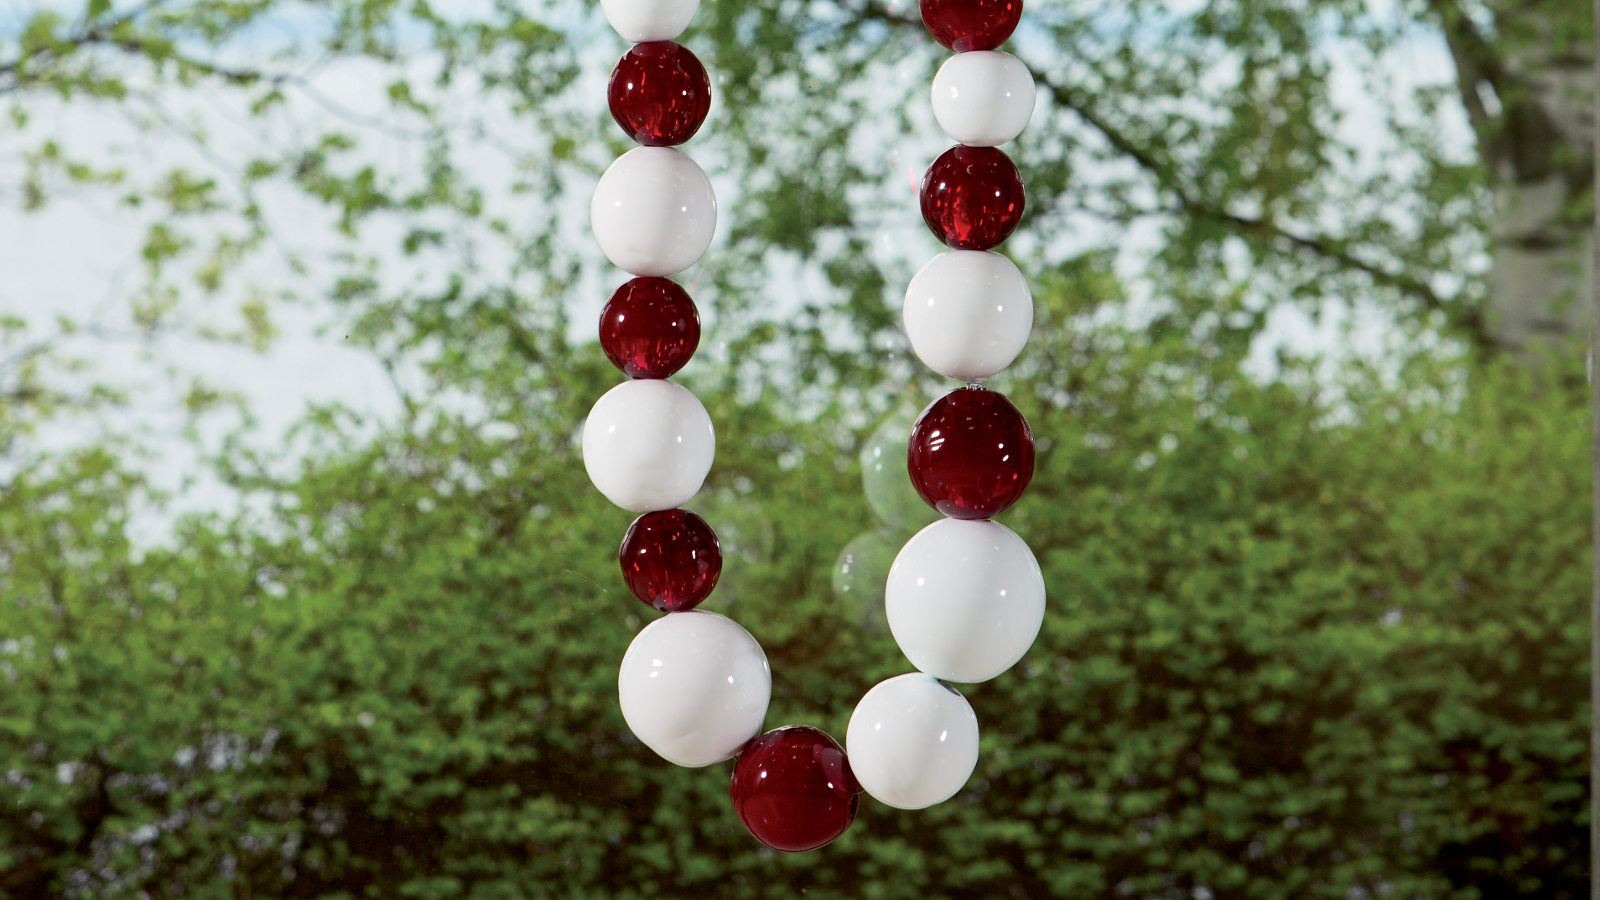 Kuvassa on isoja, valkoisia ja punaisia helmiä helminauhassa ripustettuna puun oksalle. Kuvassa näkyy helminauhan kaartuva pää.